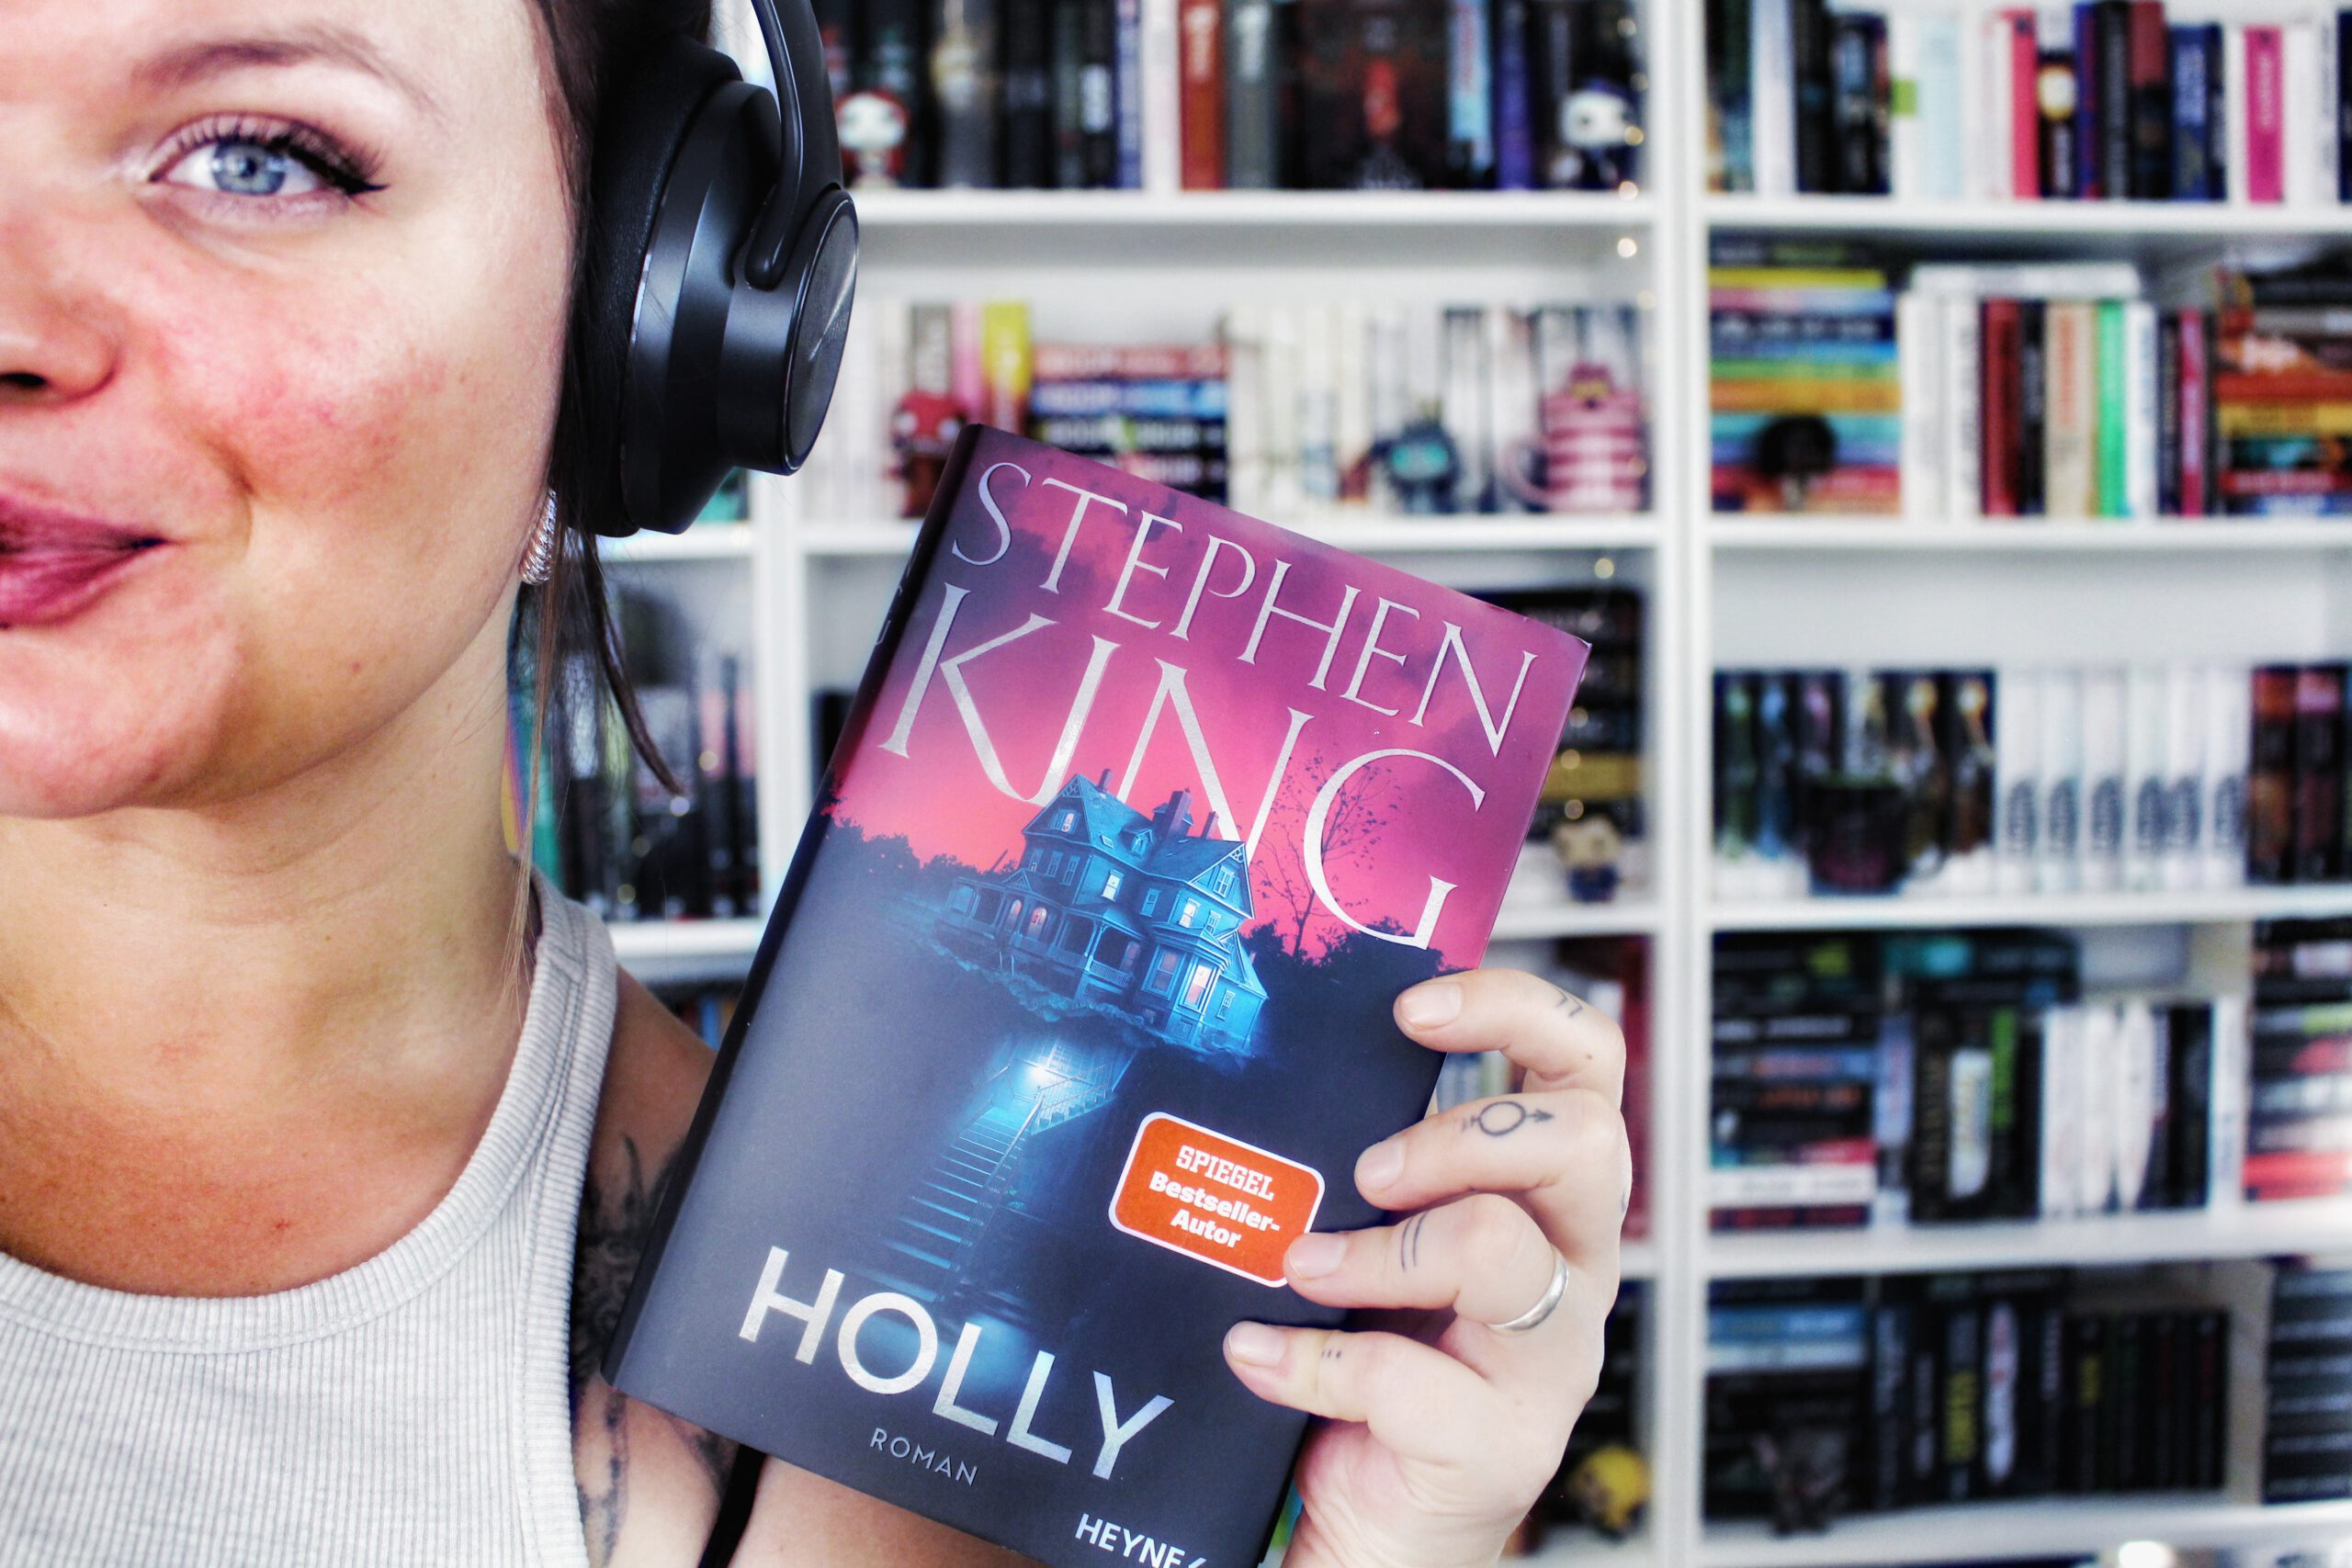 Rezension | Holly von Stephen King